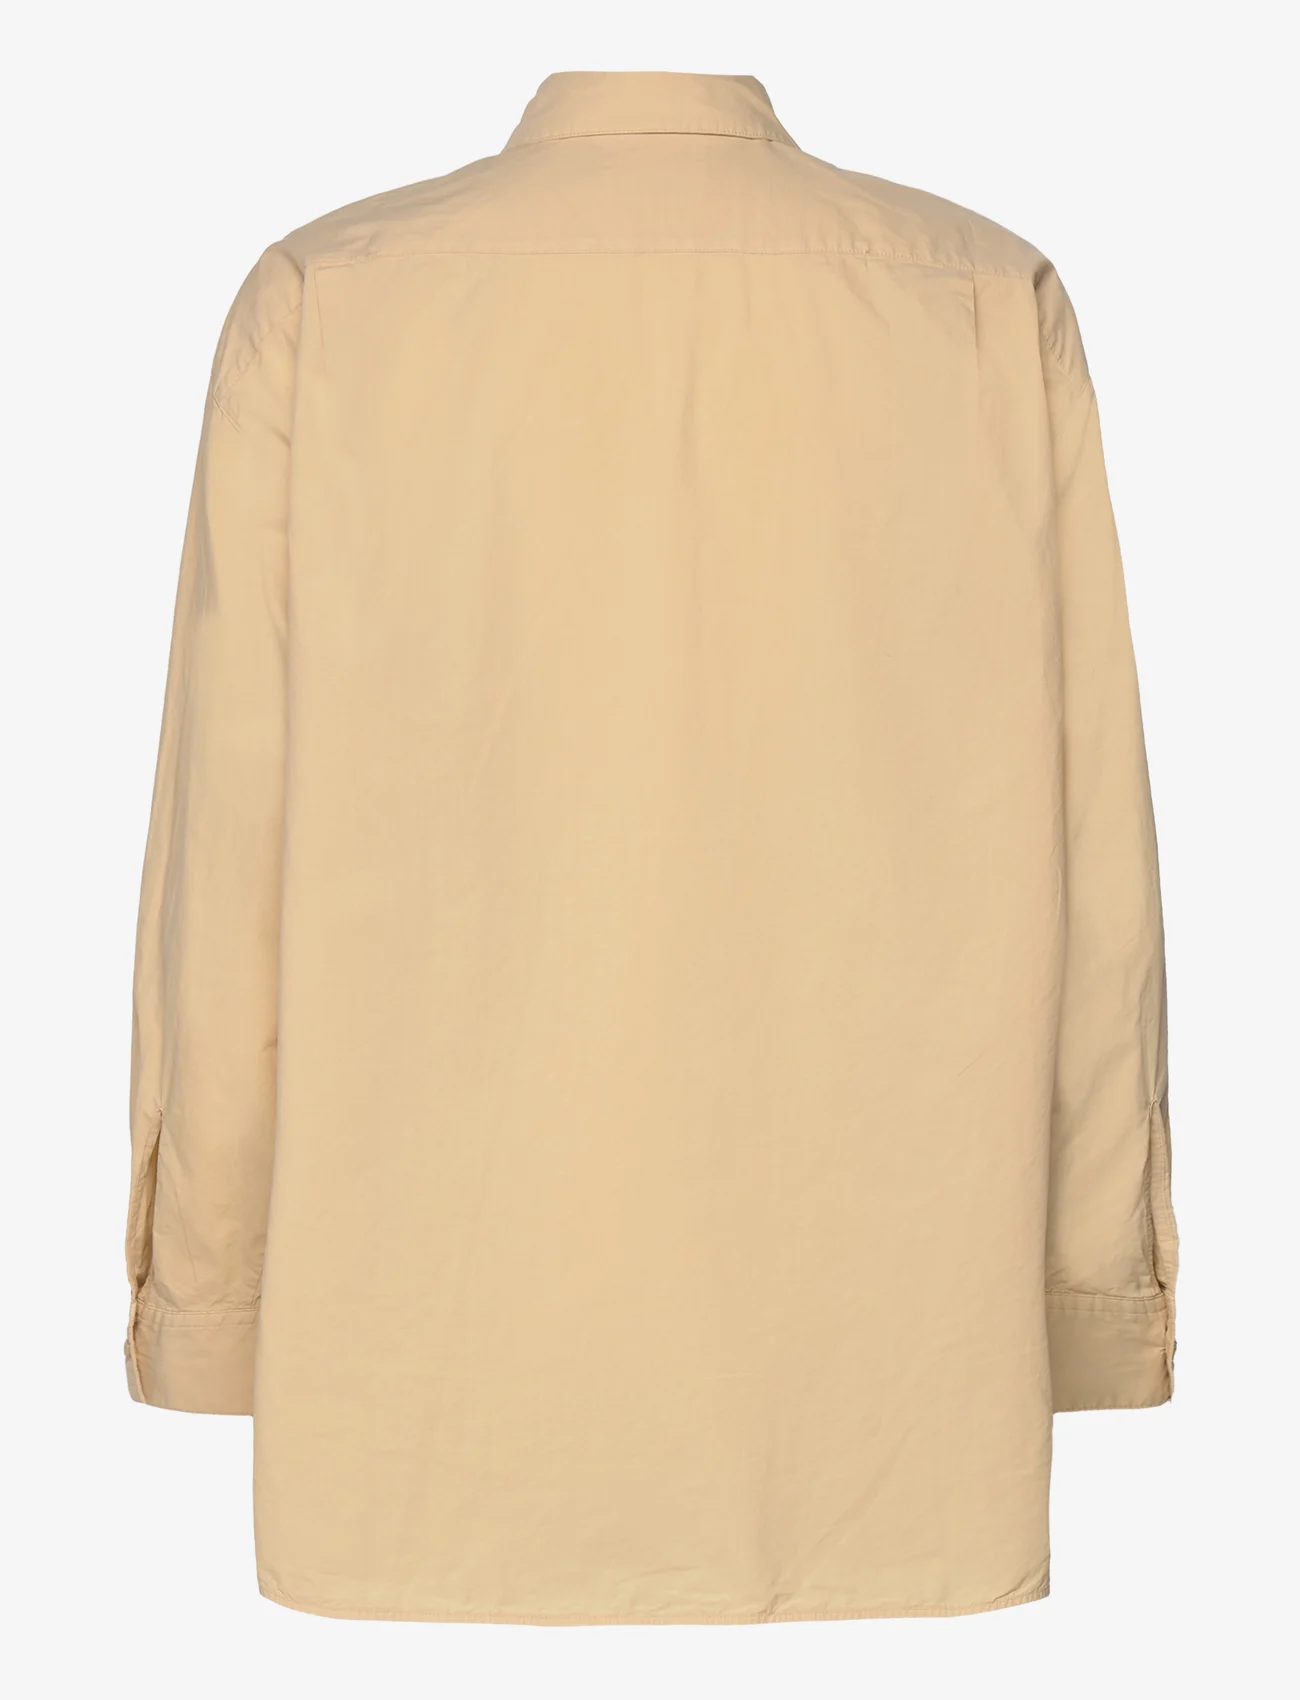 Marimekko - GRISTE SOLID - langærmede skjorter - beige - 1